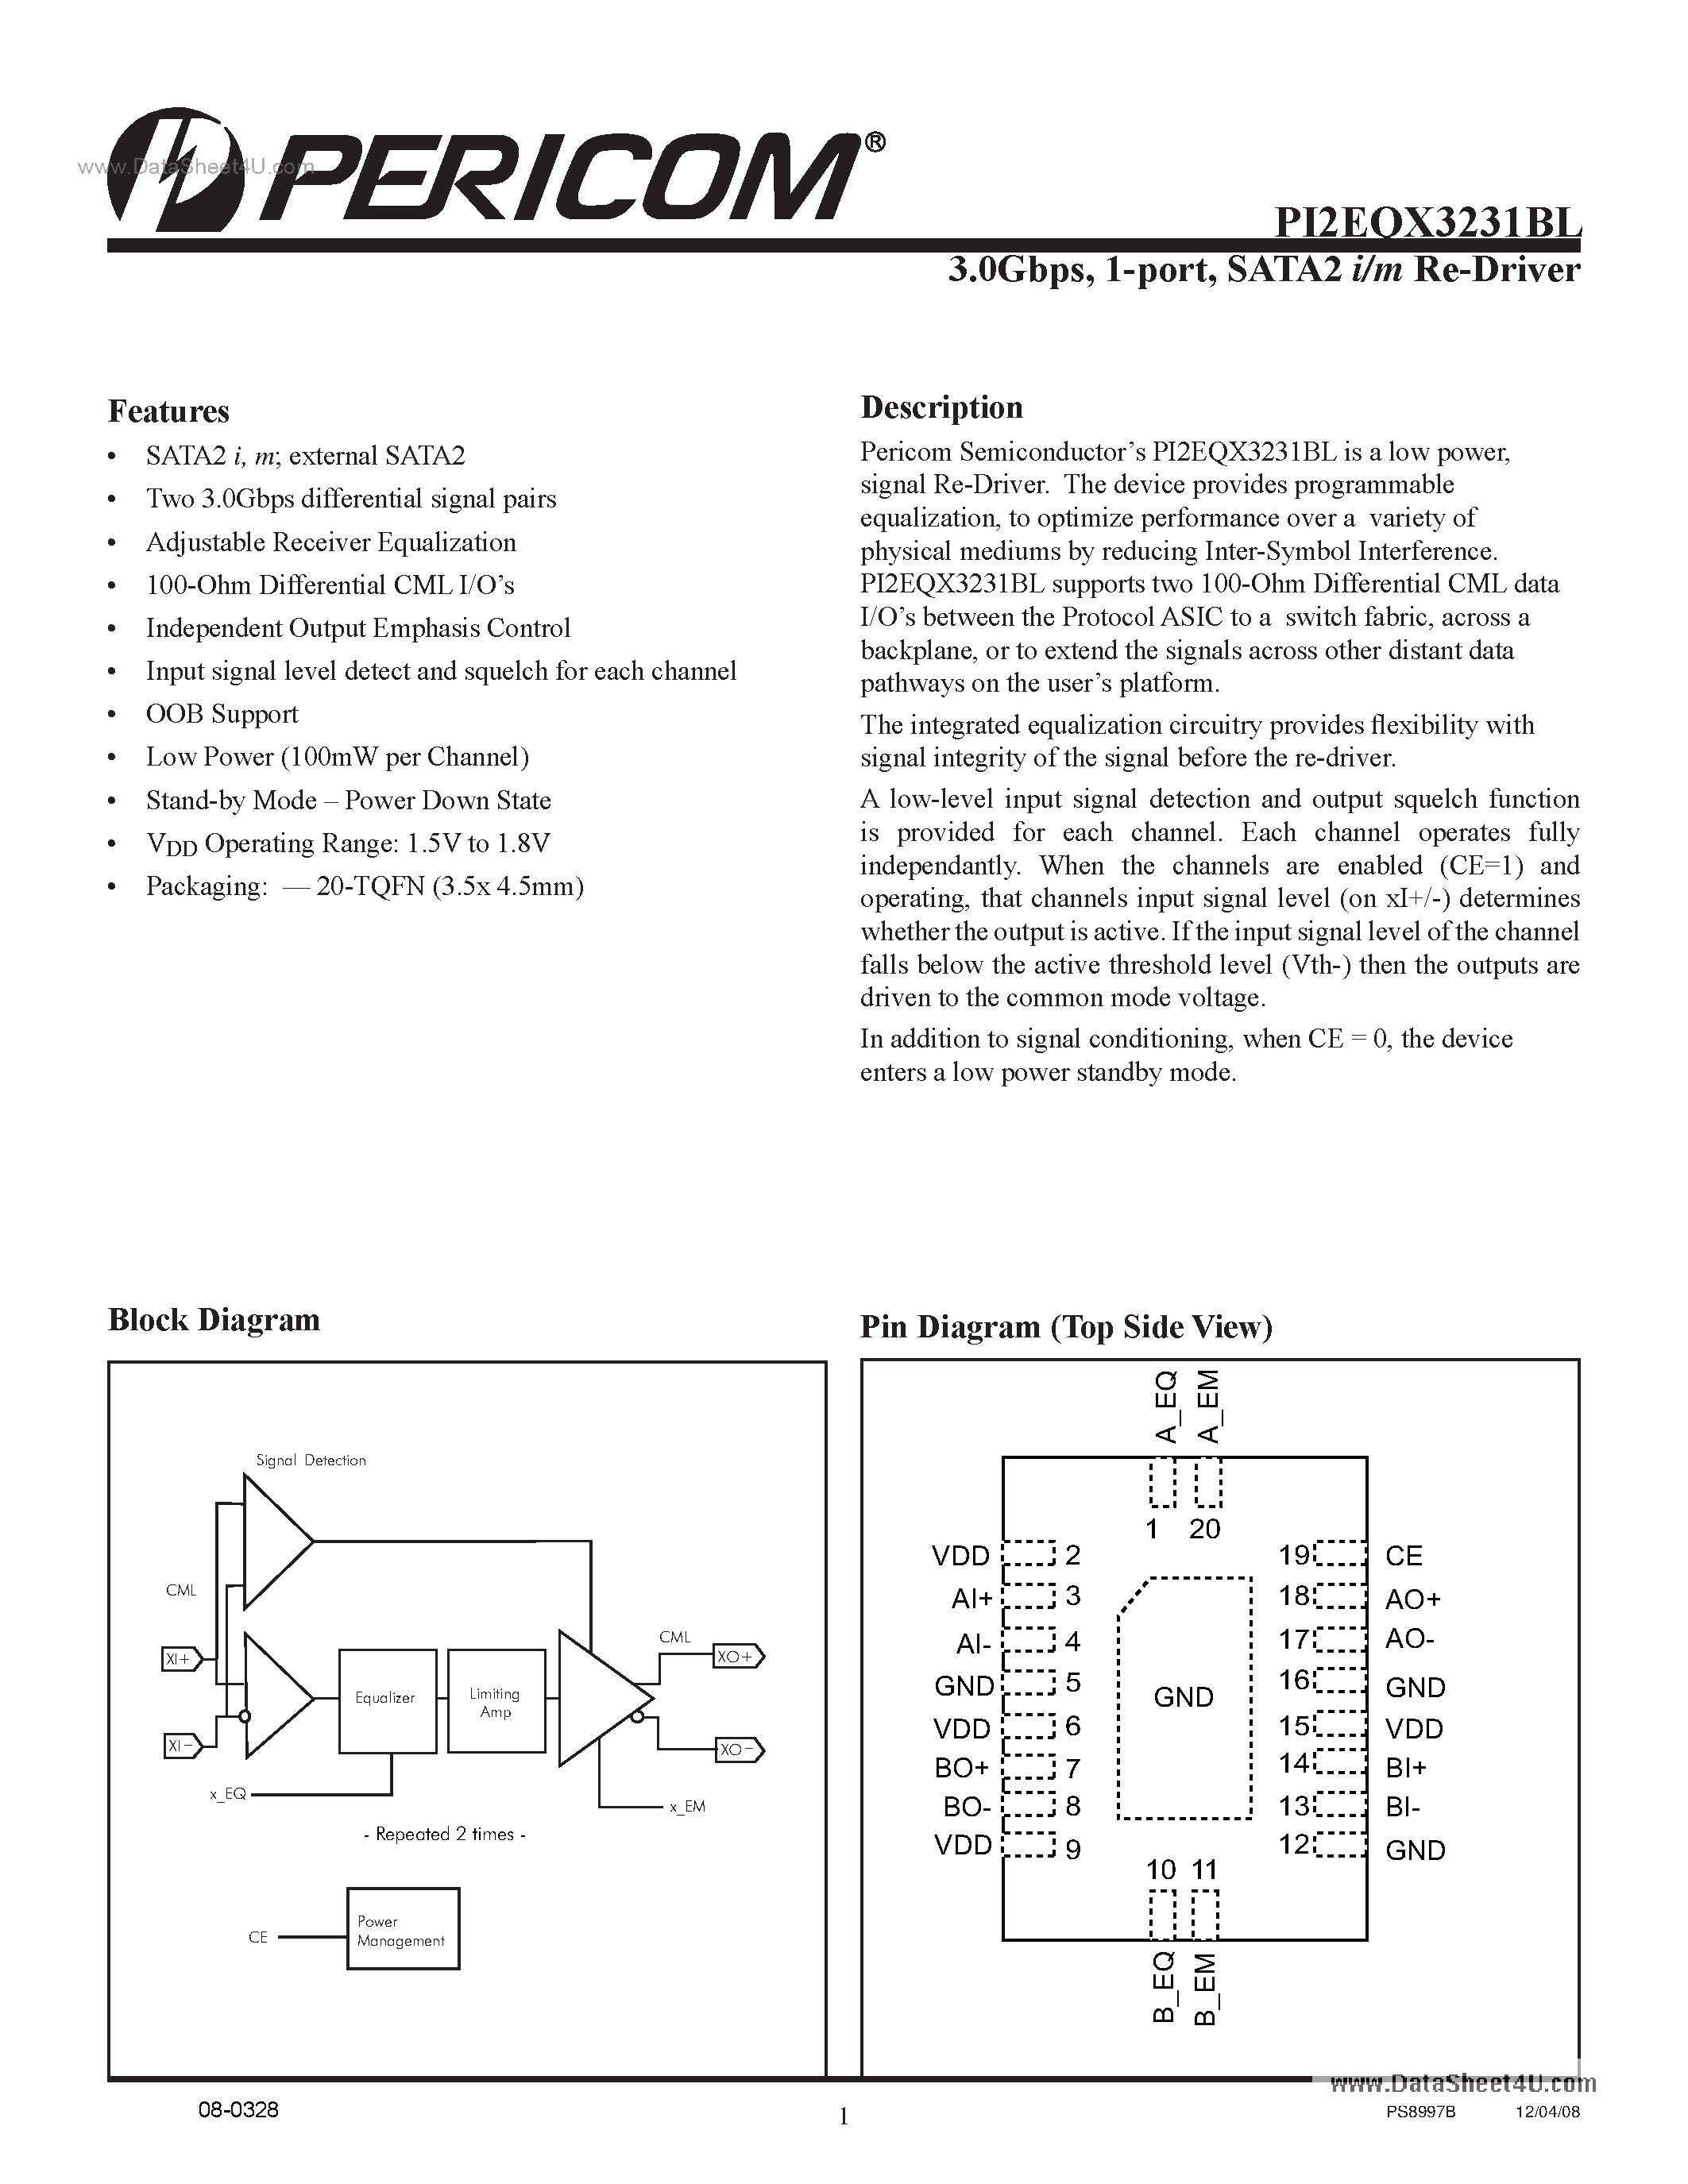 Datasheet PI2EQX3231BL - 1-port SATA2 I/m ReDriver page 1